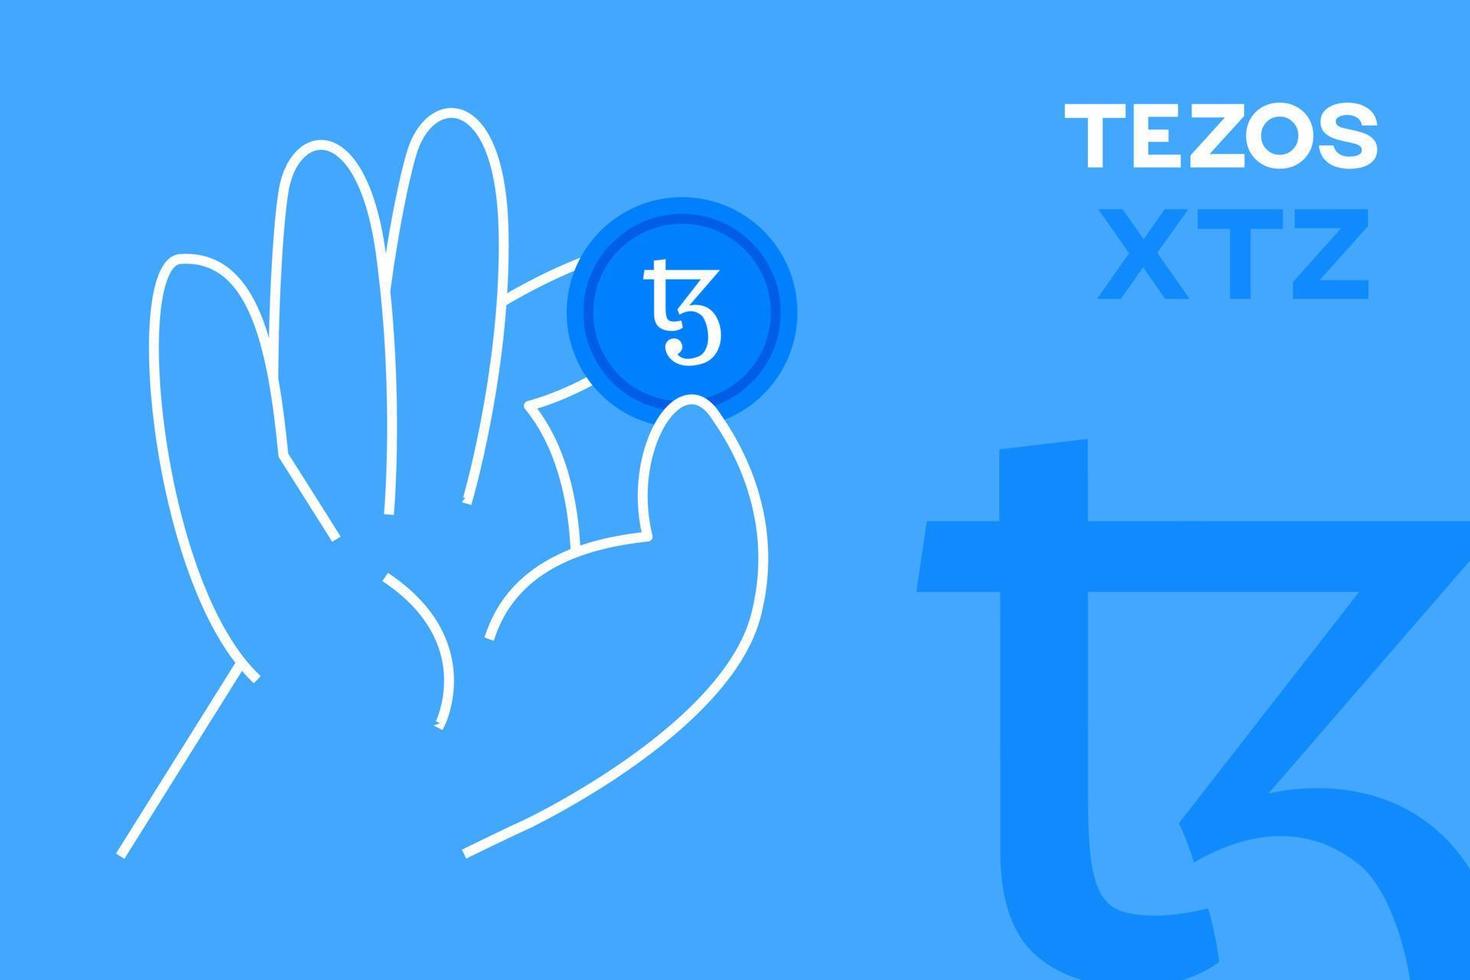 mano sosteniendo moneda tezos, vector editable de criptomoneda. logotipo xtz, banner de diseño plano criptográfico. token xtz sobre fondo azul, para aplicaciones, web y animación.